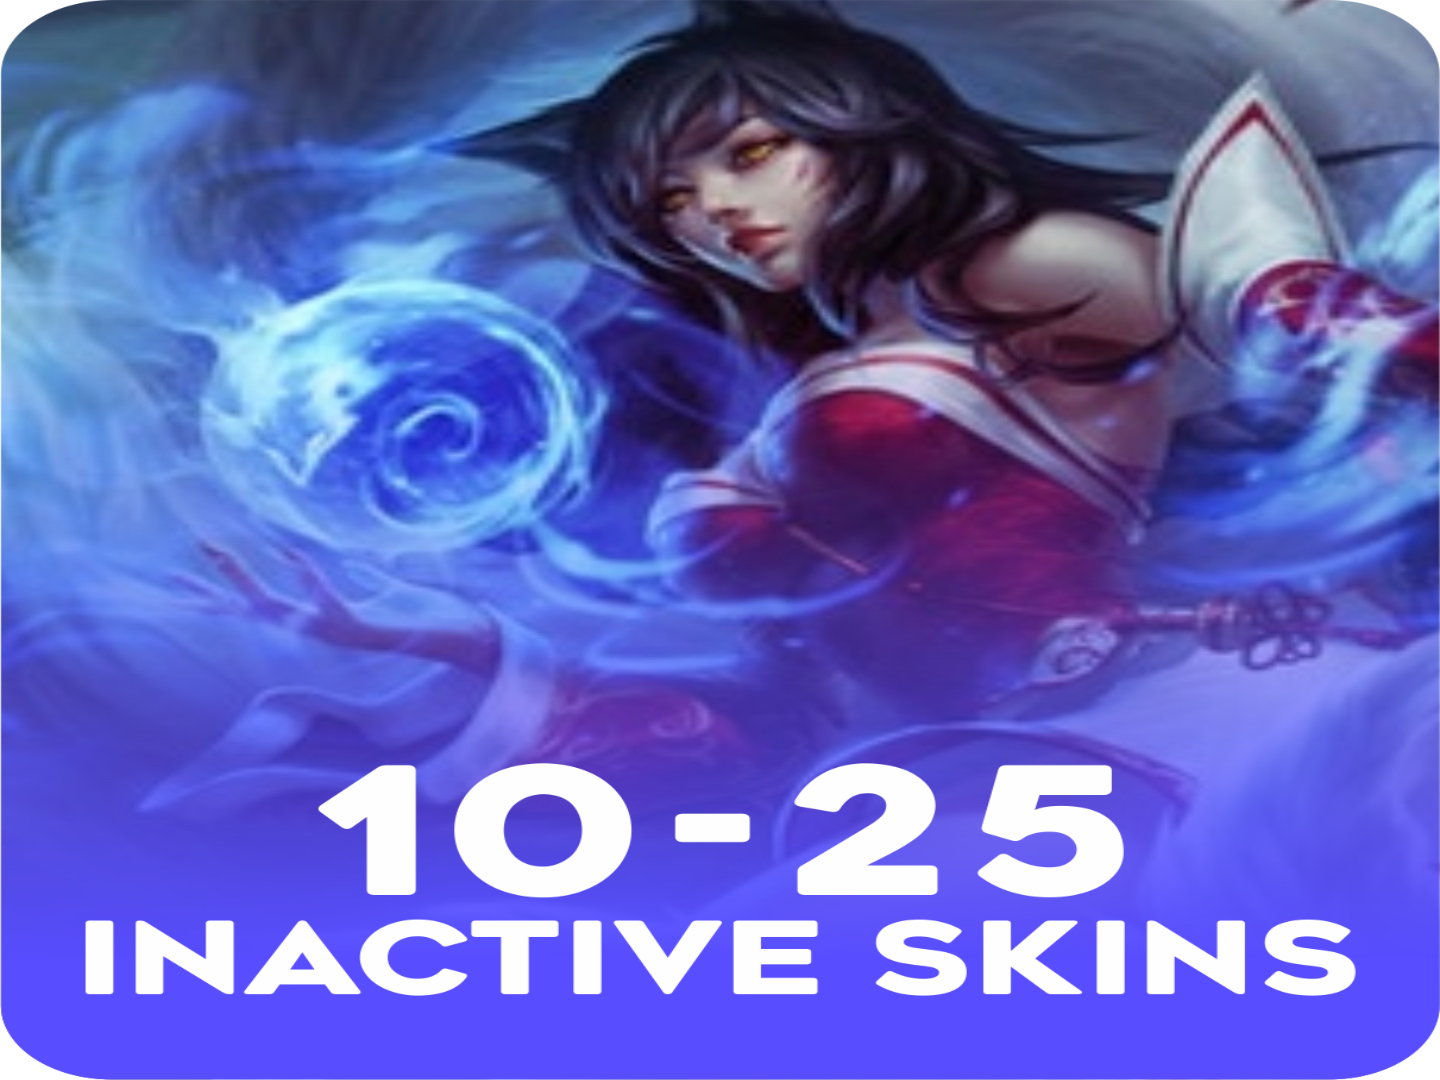 Inactive 10-25 skins Account